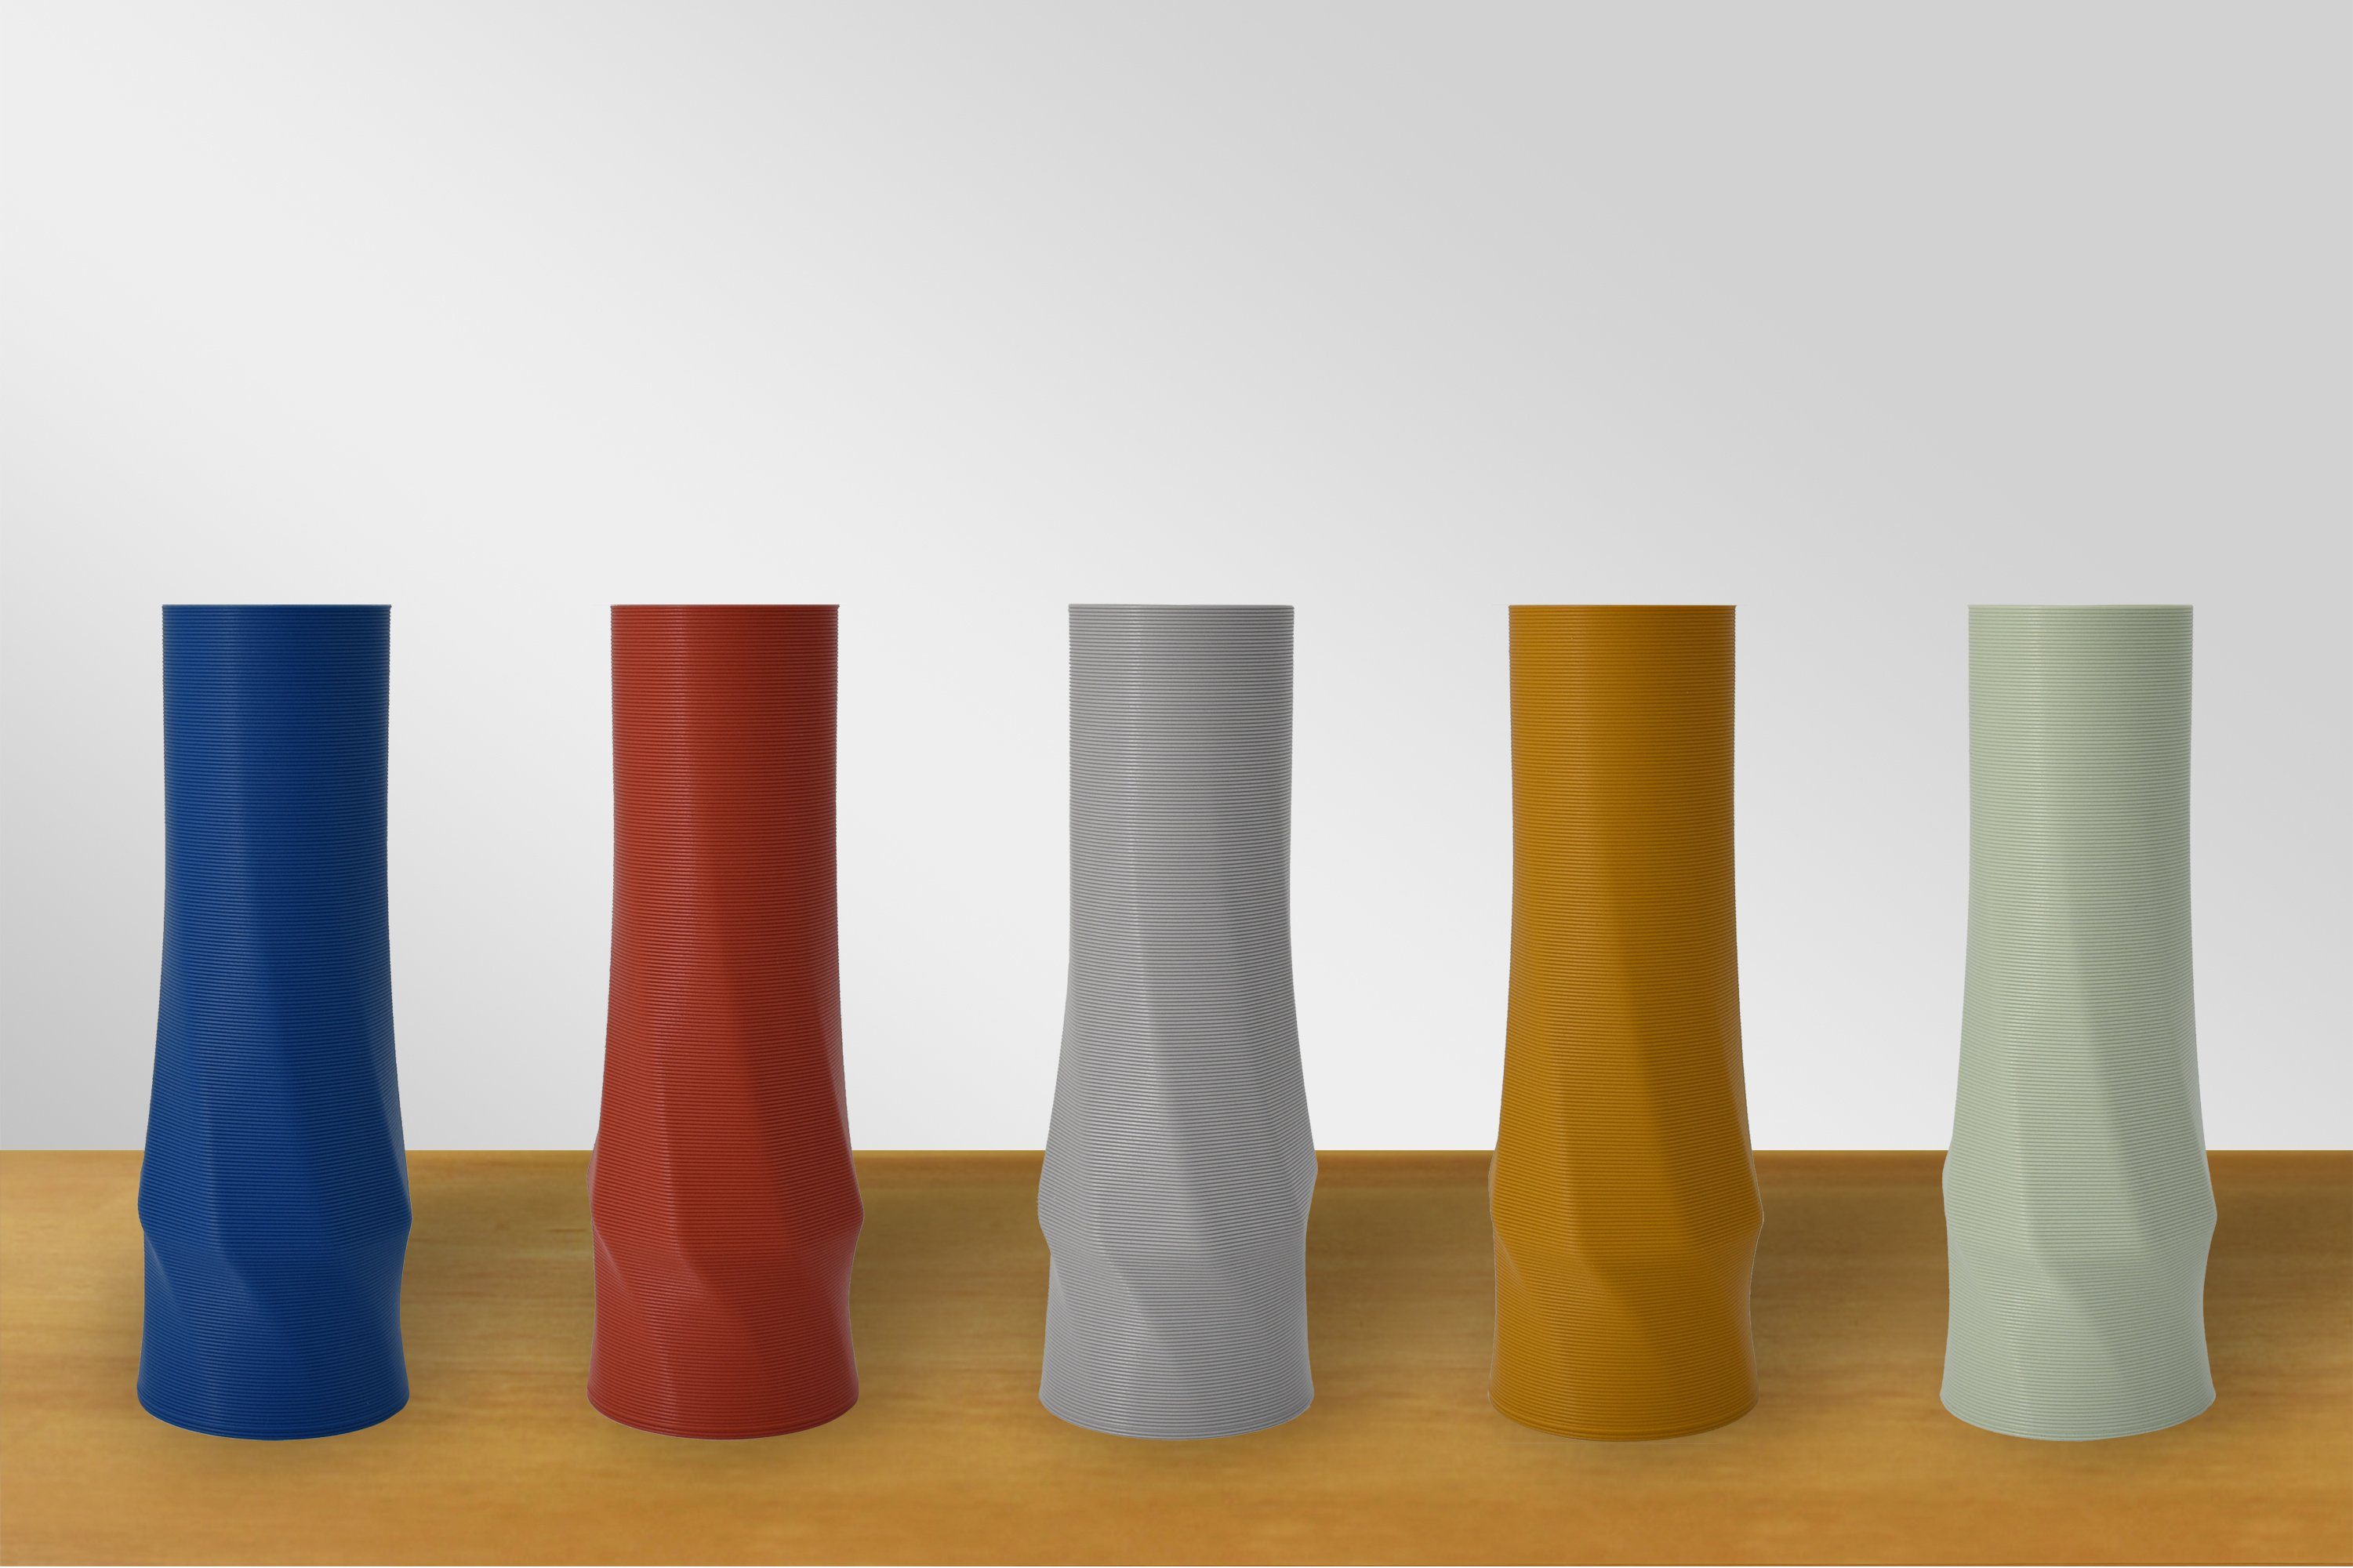 des verschiedenen Wasserdicht; Shapes 100% (Rillung) Größen), Vasen Vasen, 3D-Druck (basic), Dekovase, Set, 3D Dekovase 3er geometrio. (3er - Olivgrün Leichte in innerhalb Spar-Set, Decorations 3D Struktur Materials 3